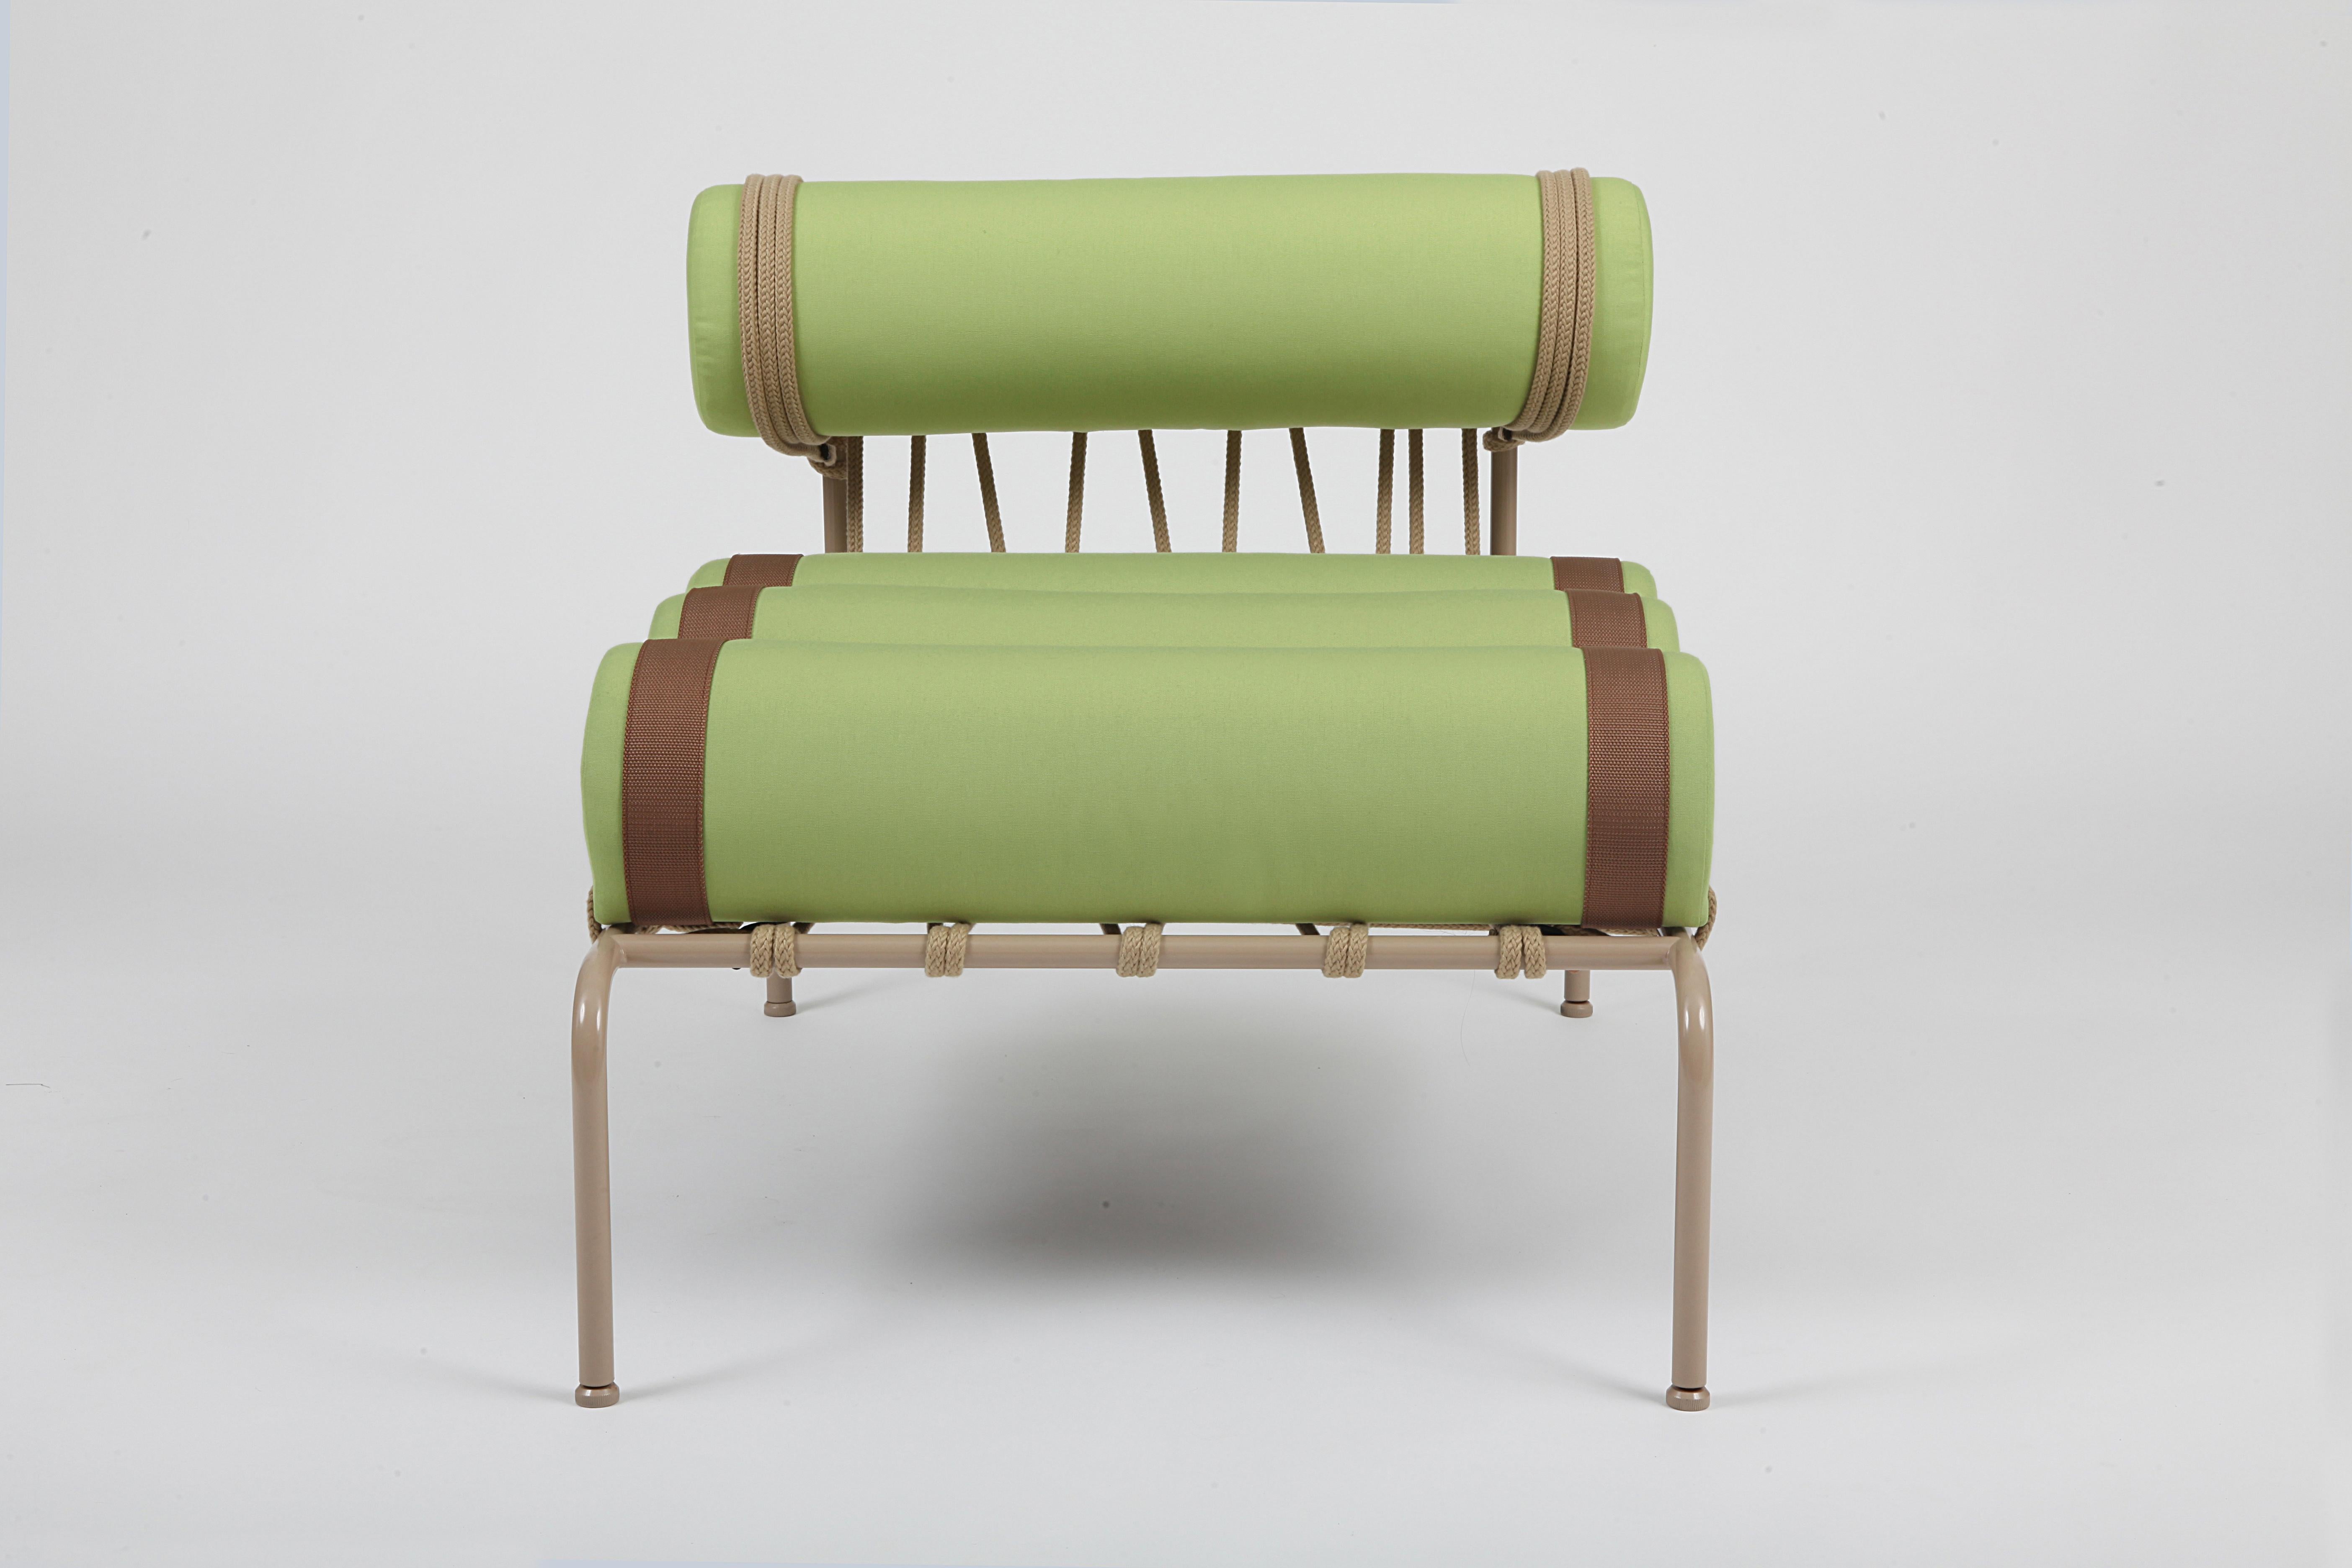 Der Sessel Kylíndo ist eine Sitzgelegenheit für den Außenbereich mit neu durchdachten Proportionen, die aus einem Spiel mit der Extrusion von Zylindern entstanden ist, einer geometrischen Figur, die sich aus der vollständigen Drehung eines Rechtecks